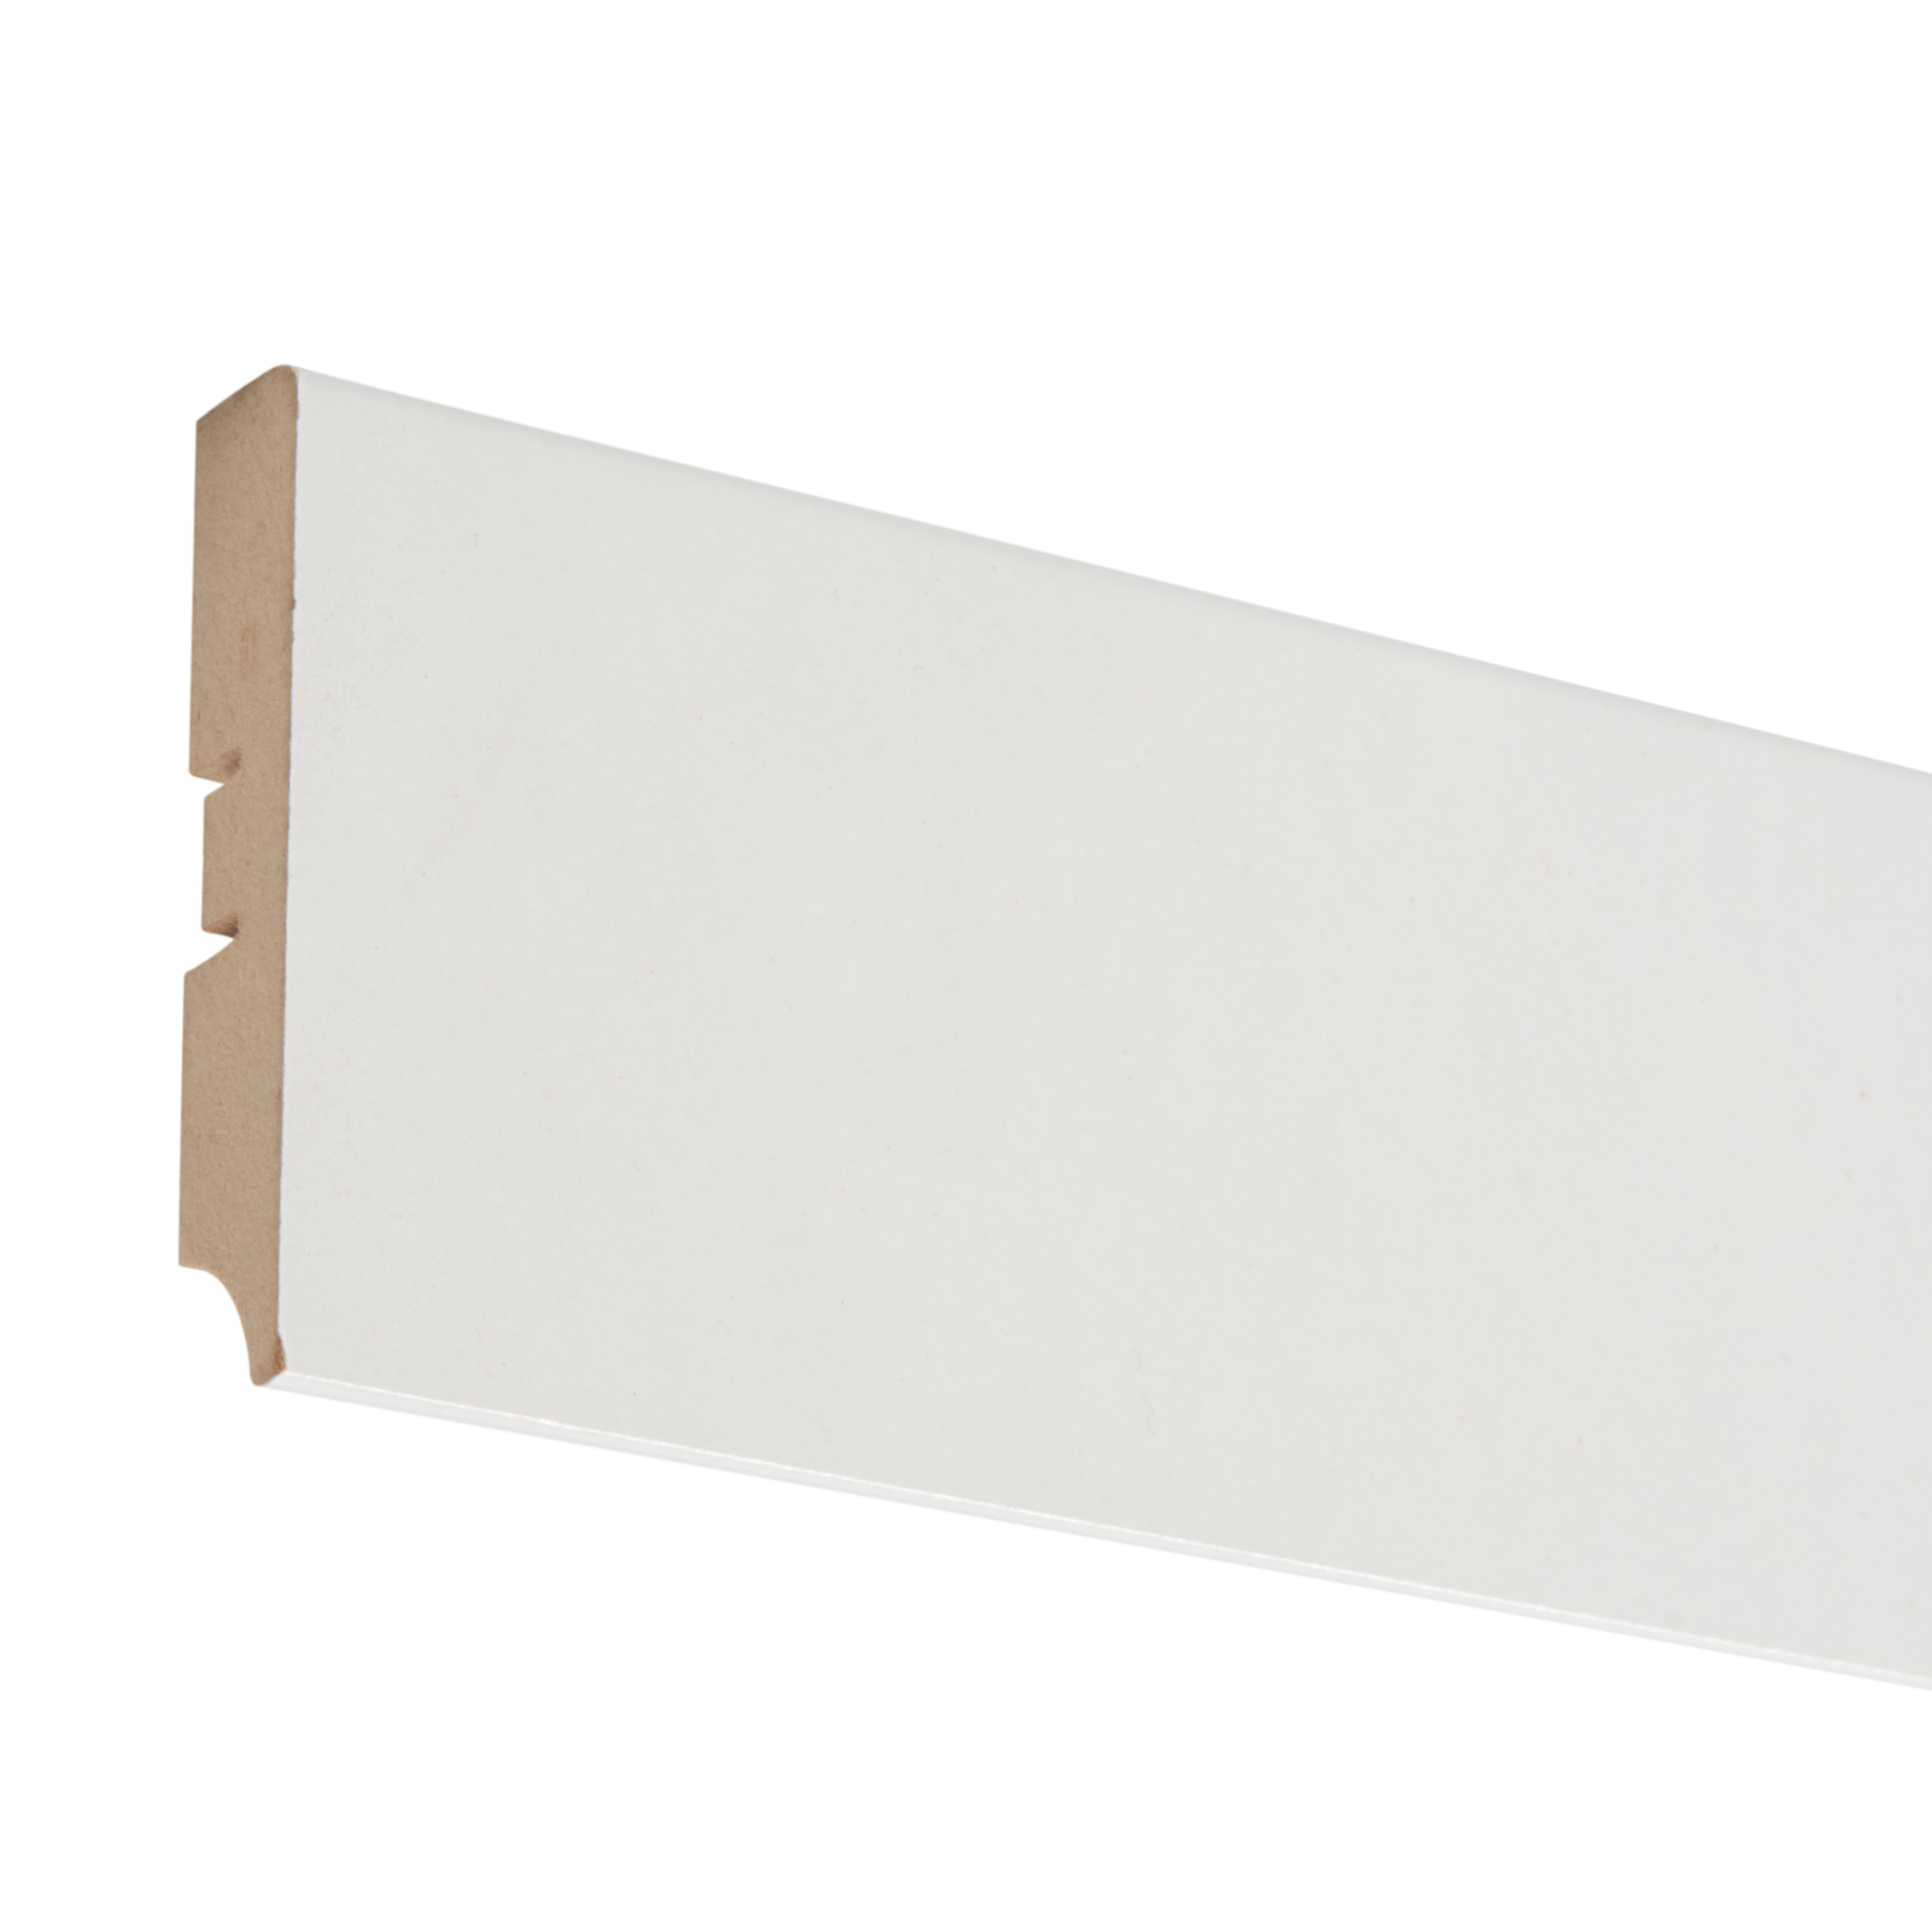  напольный МДФ 8 см 2.4 м цвет белый  –  по низкой .